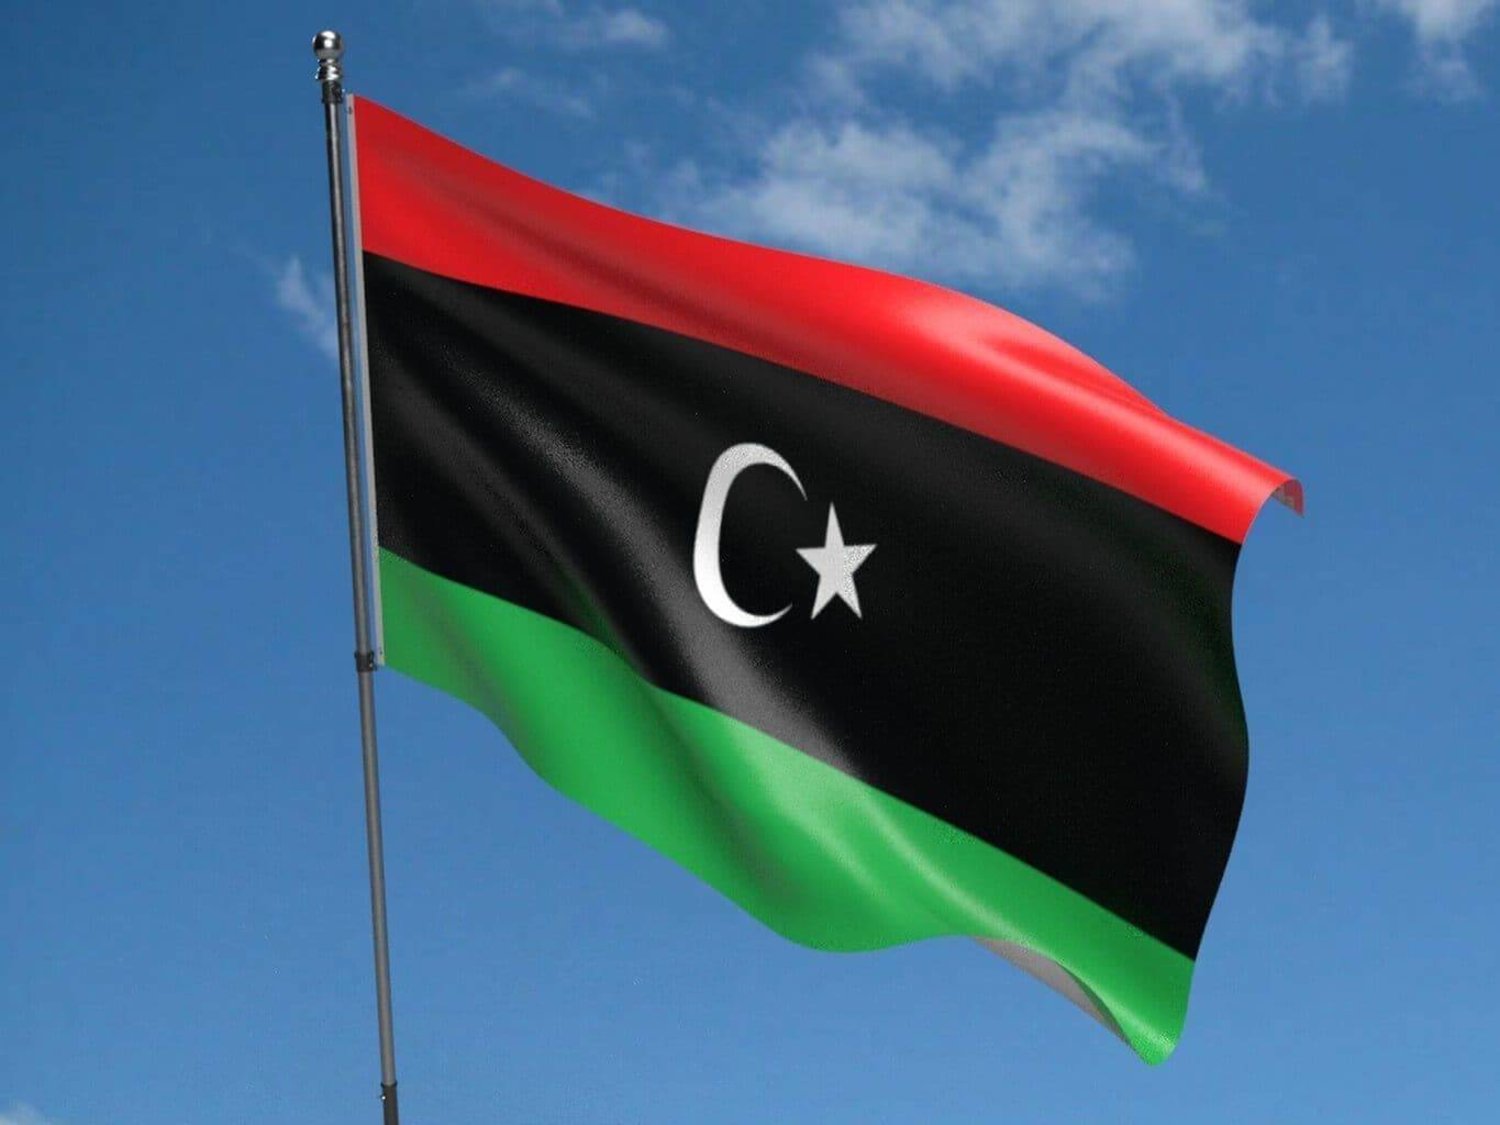 أدانت وزارة الخارجية الليبية اليوم (الثلاثاء) اقتحام سفارتها في العاصمة السودانية الخرطوم.